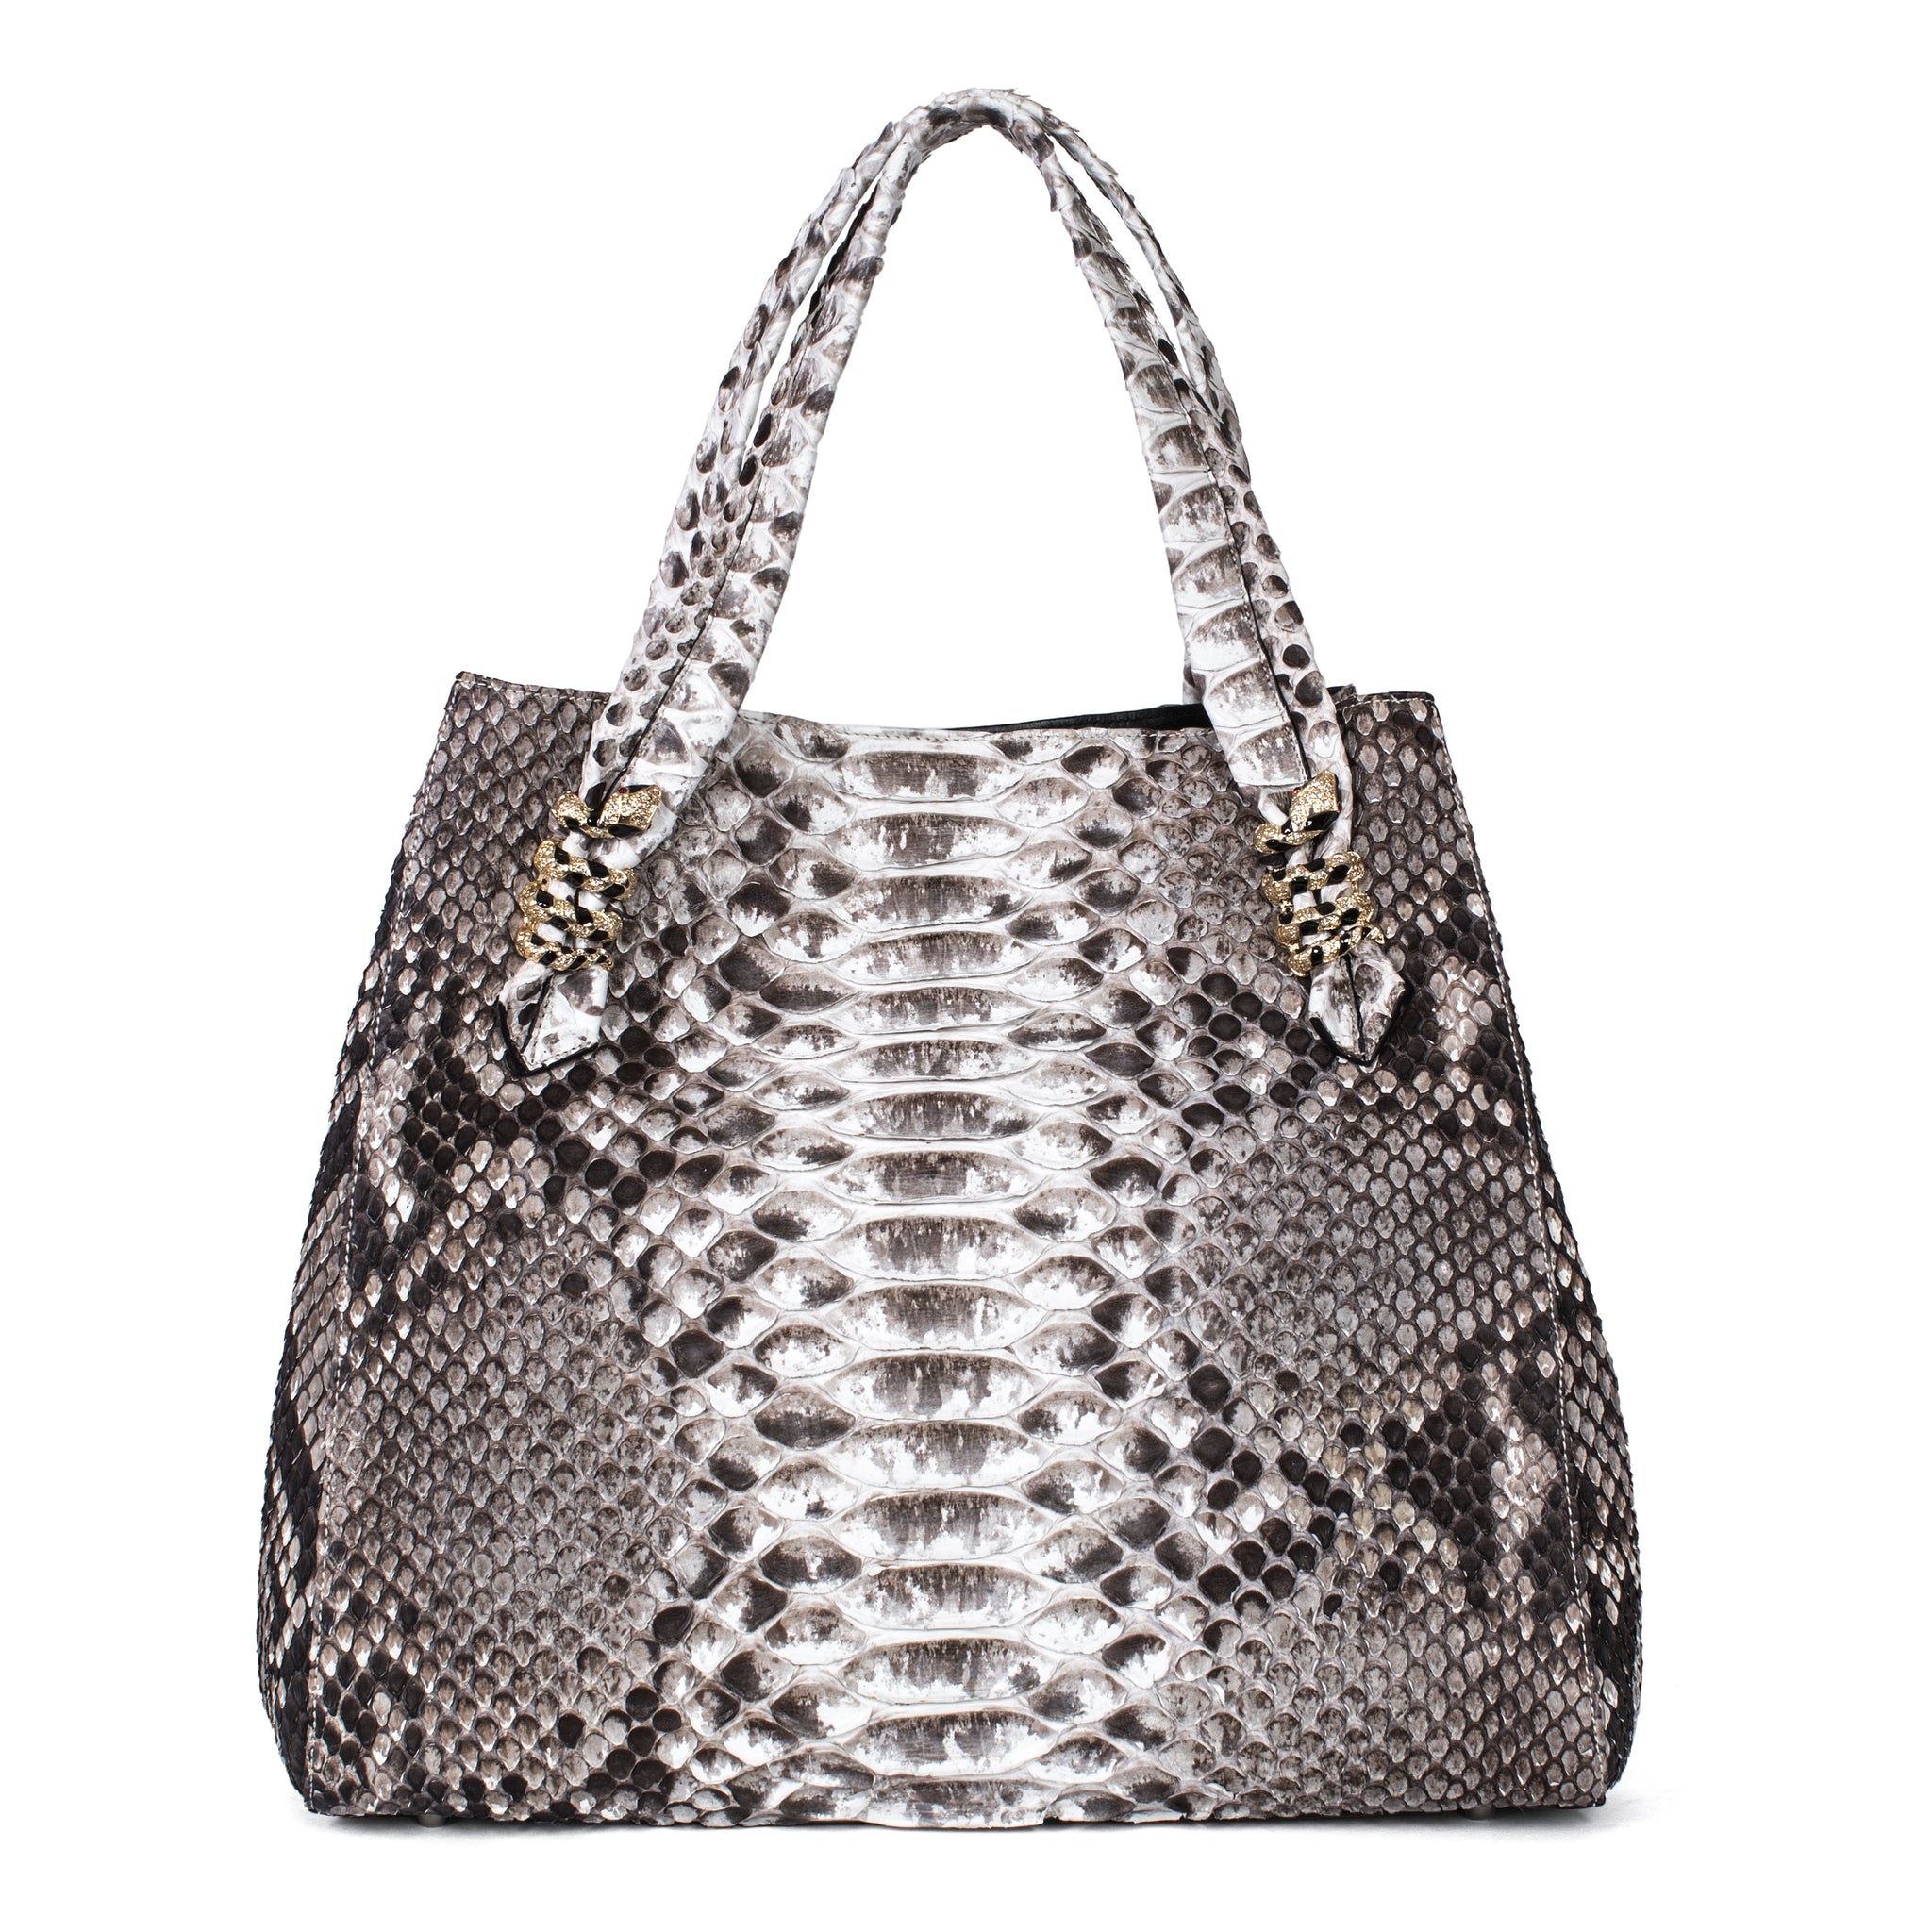 Fashionable Woman Holding Luxury Snakeskin Python Bag. Elegant